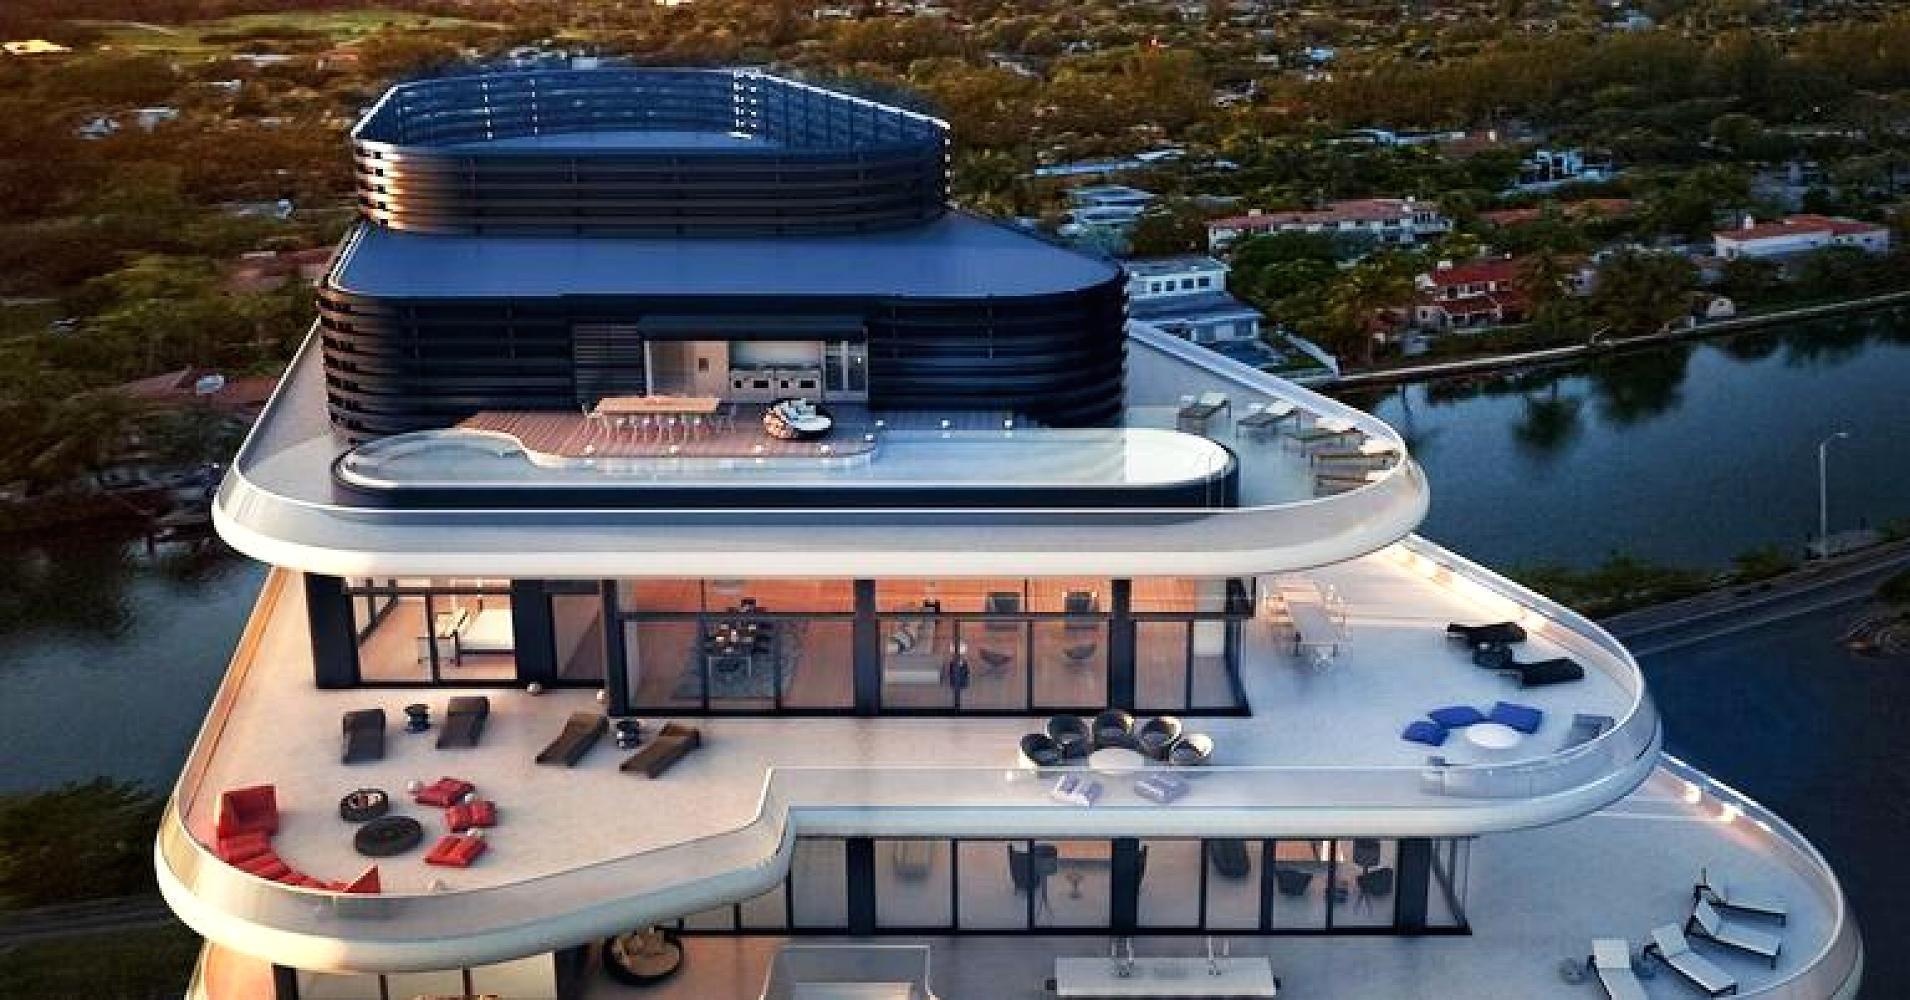 The new billionaire 'beach bunker' in Miami